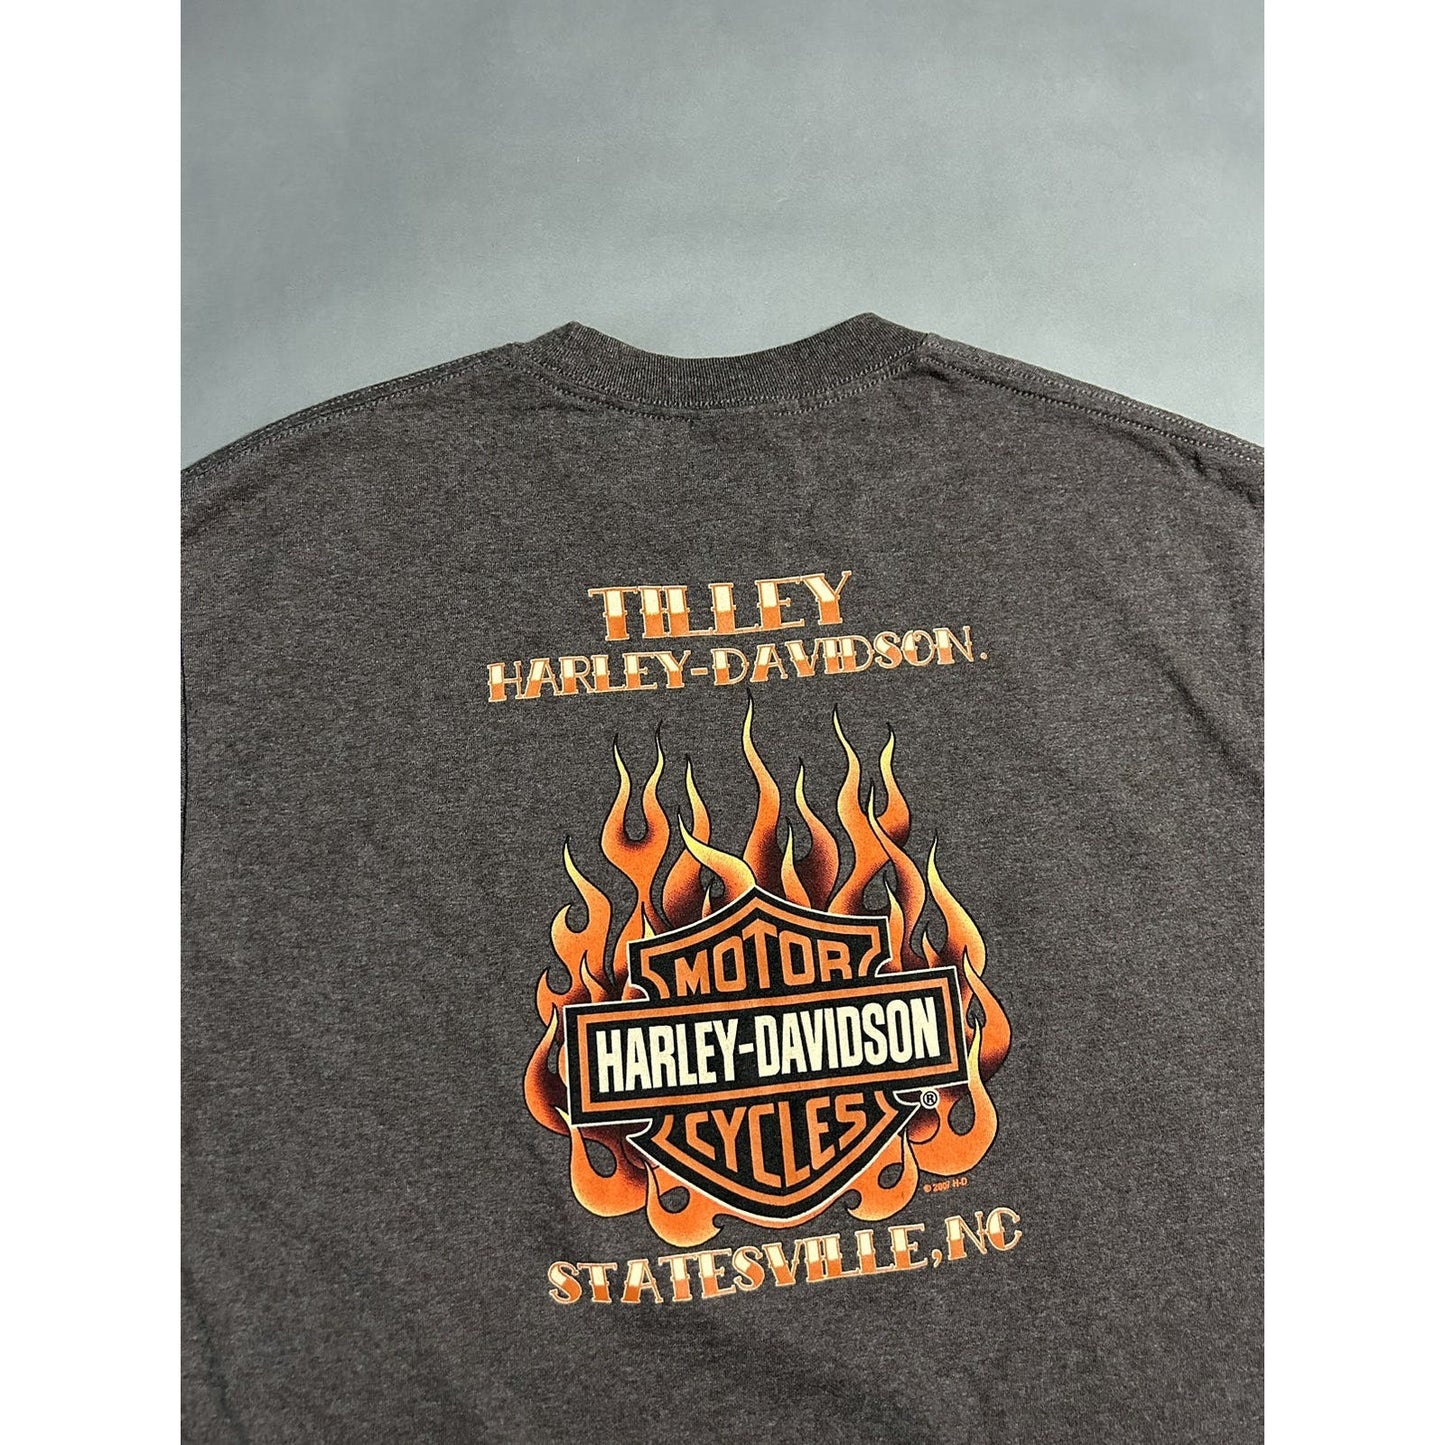 Harley Davidson vintage t-shirt big logo cards flames 2007